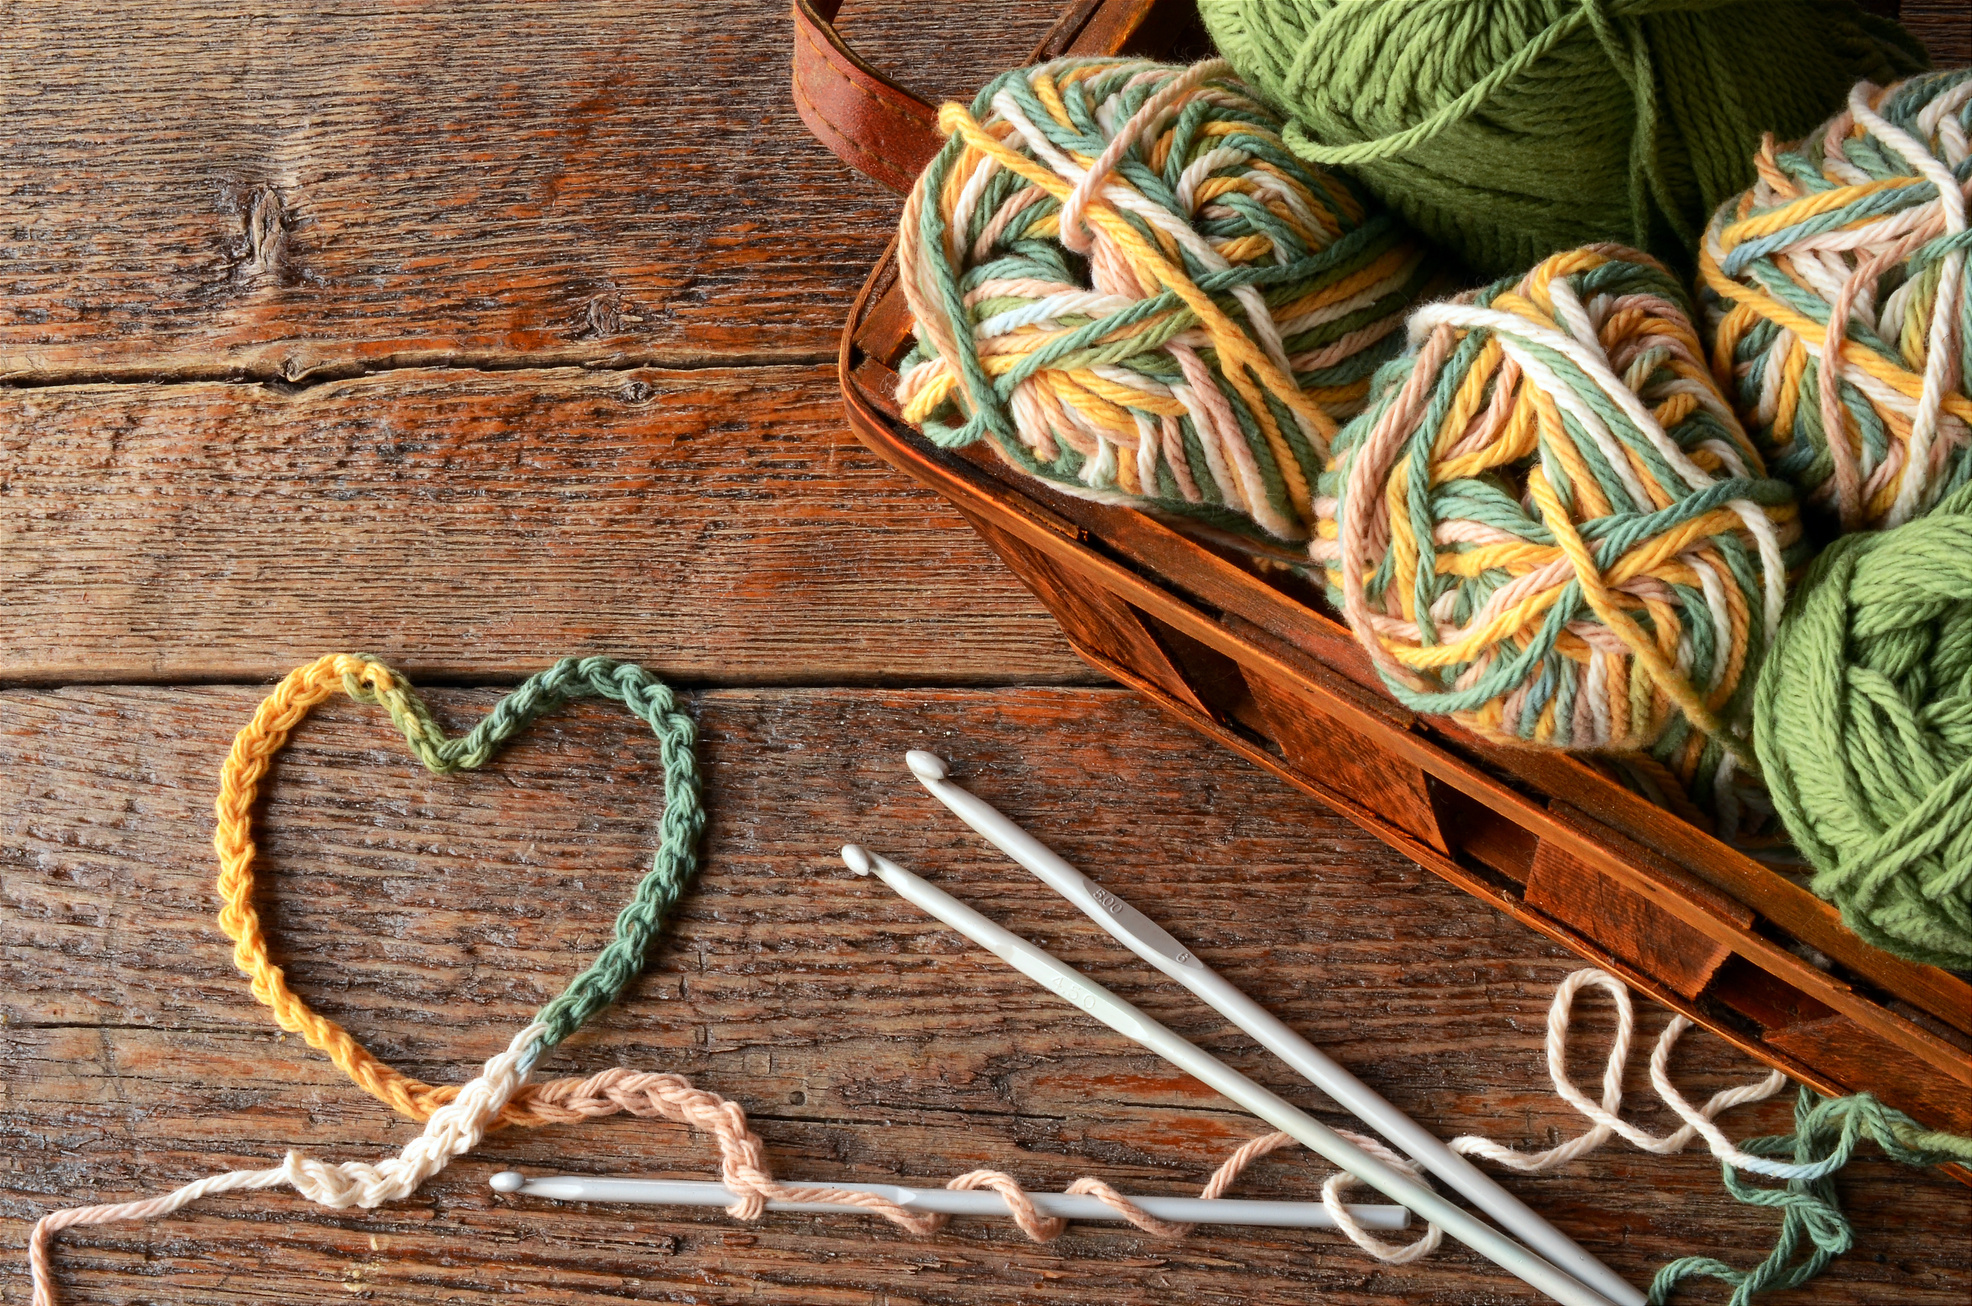 Crochet Yarn and Crochet Hook